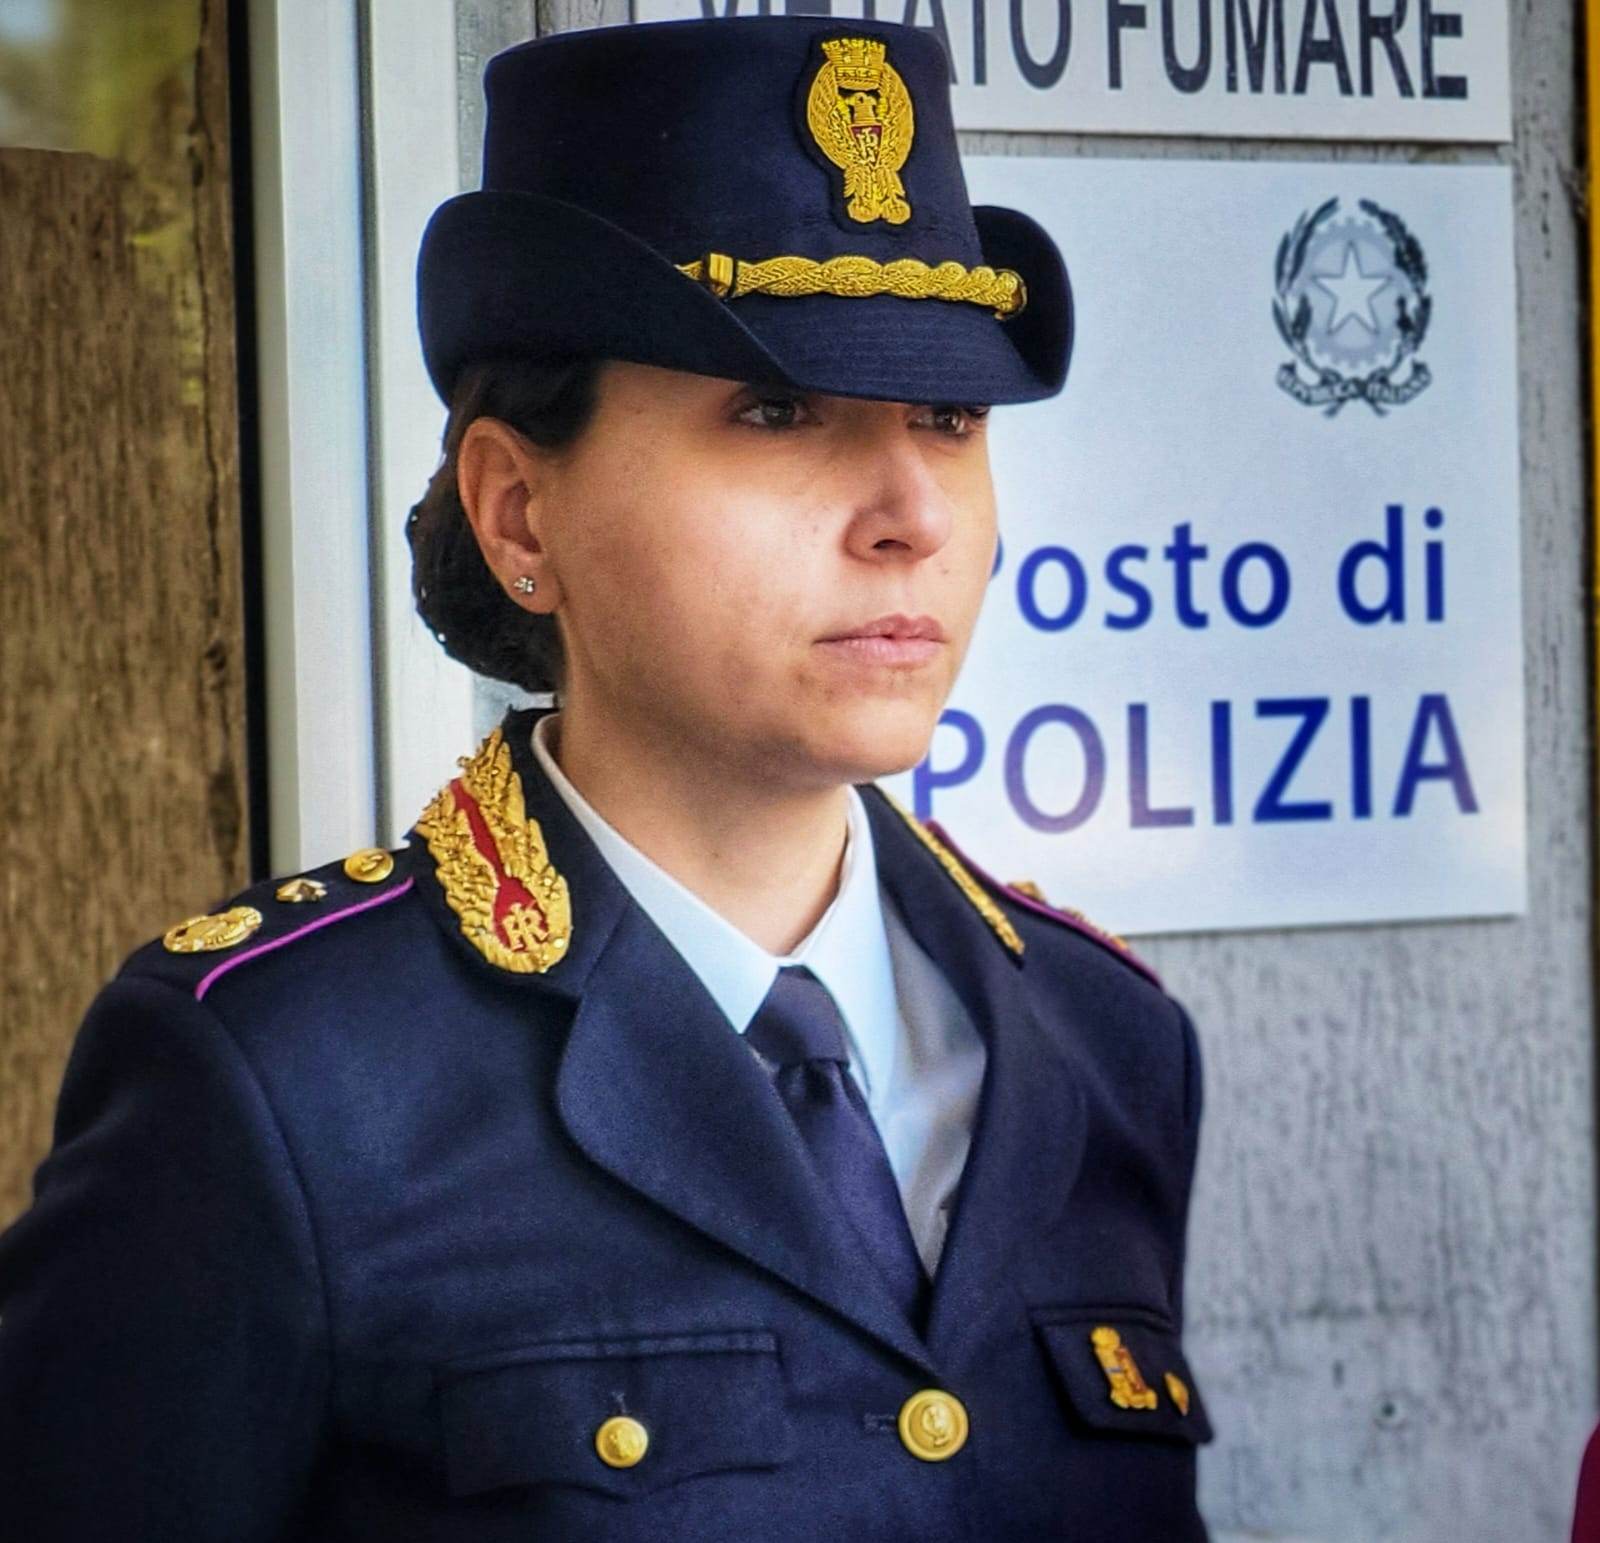 Inaugurato stamattina il posto di Polizia presso il Pronto Soccorso dell’ospedale “Sant’Elia” di Caltanissetta.